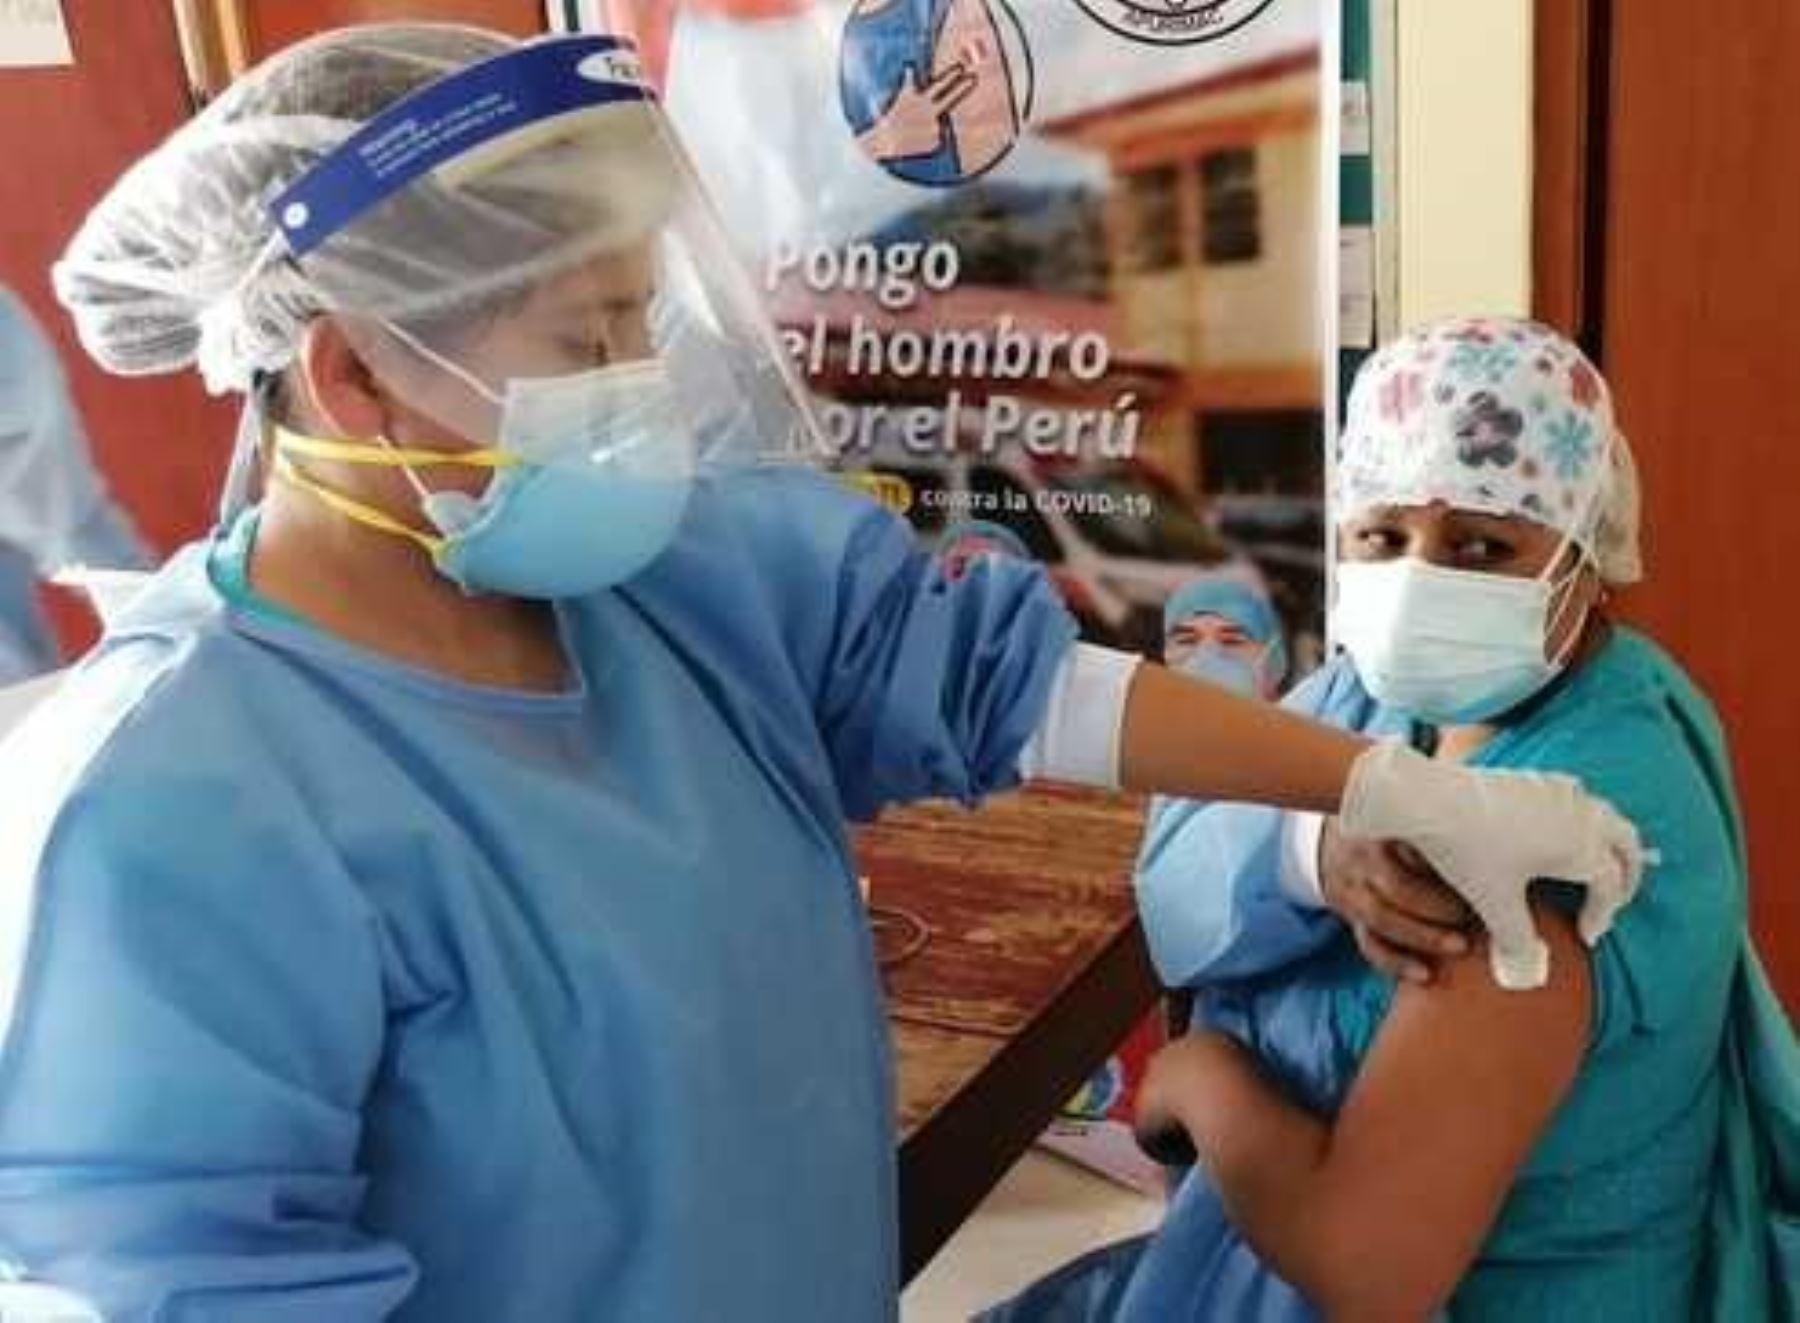 Regiones del centro del país presentan avances importantes en el proceso de vacunación contra la covid-19, destacó el Ministerio de Salud.